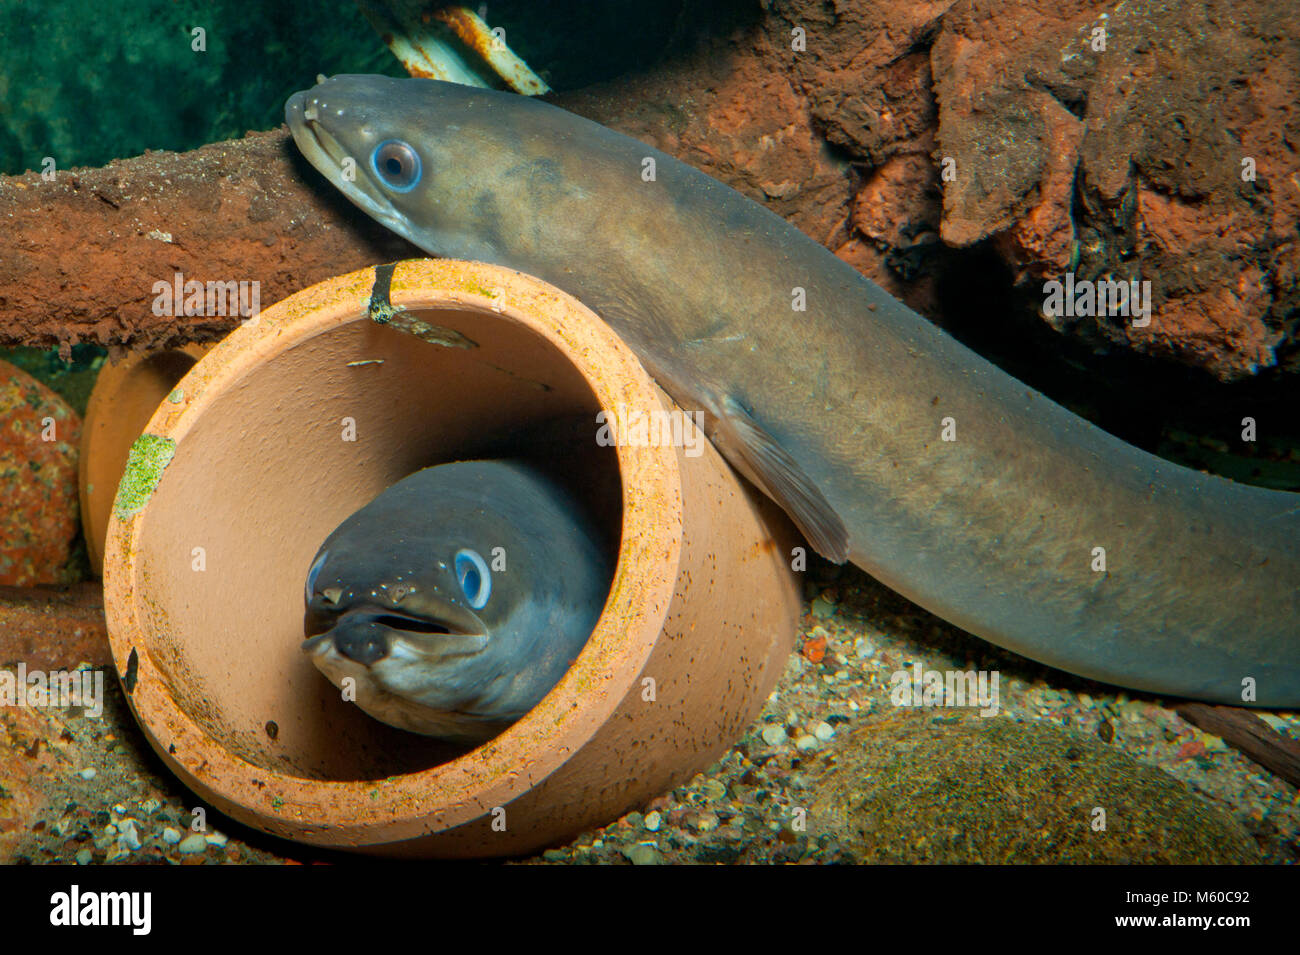 La anguila europea (Anguilla anguilla). Dos individuos en tubos y junto al río en el piso. Alemania Foto de stock